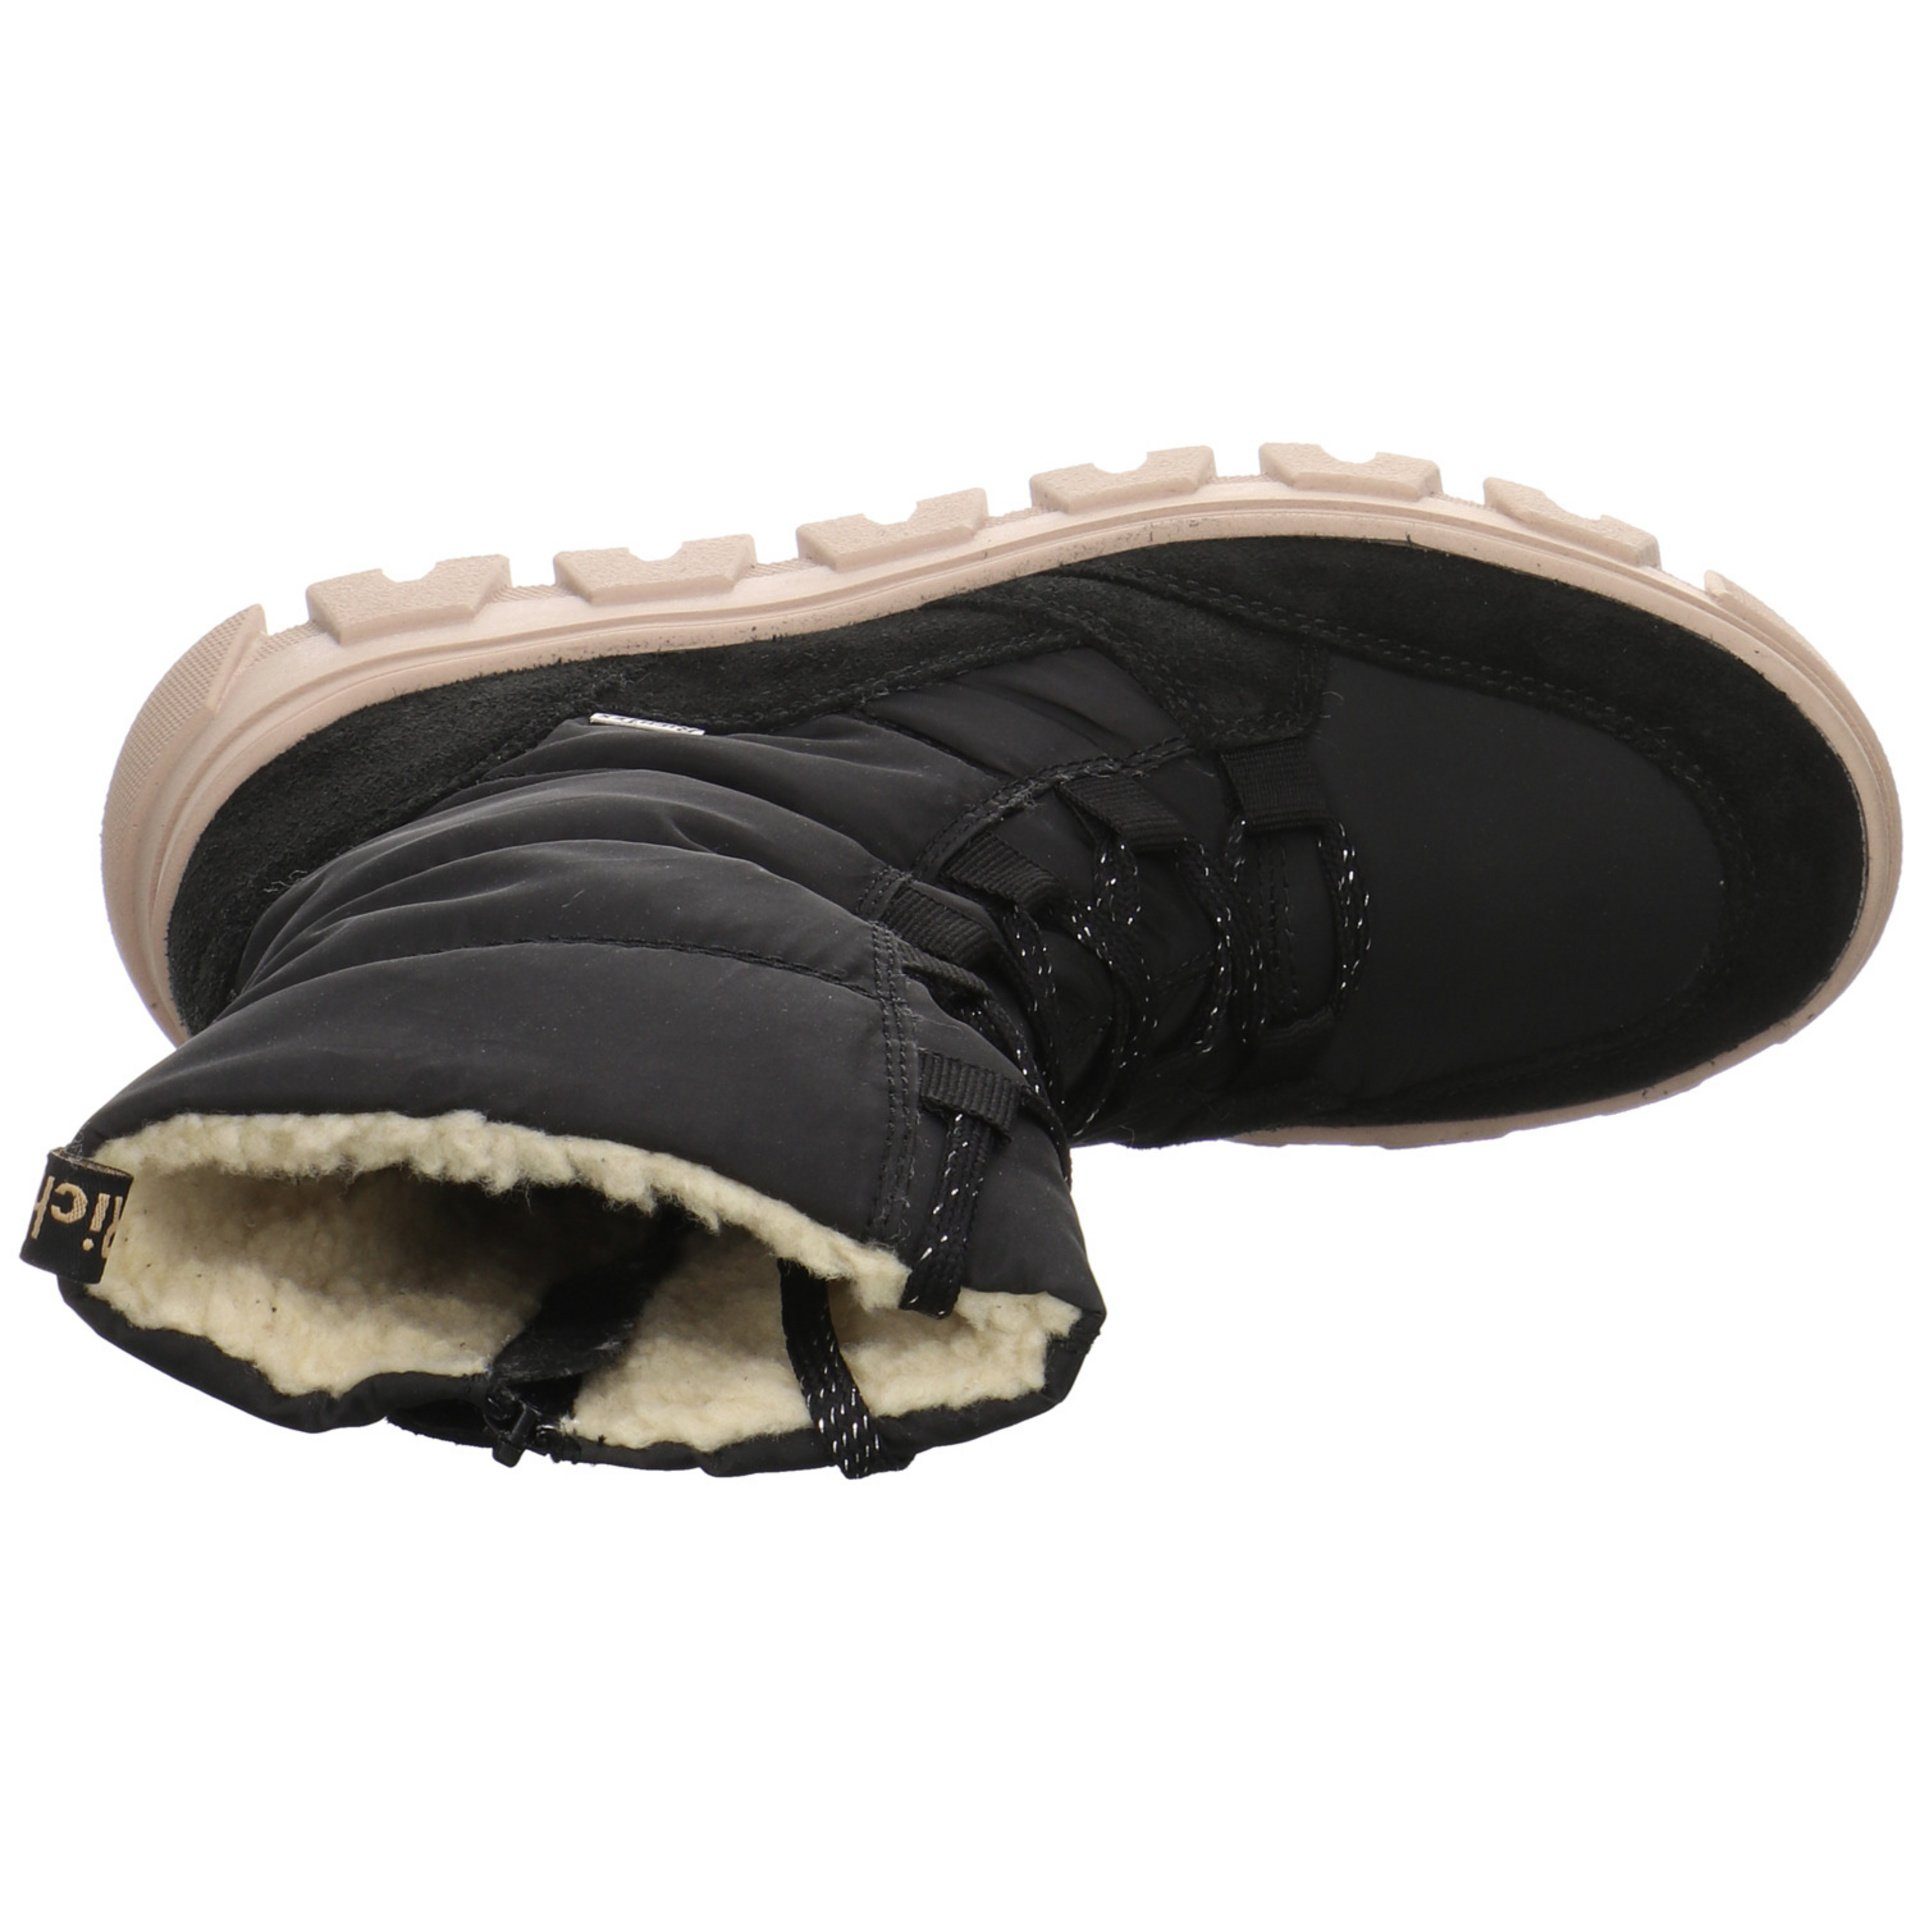 Schuhe Boots Kinderschuhe Leder-/Textilkombination Stiefelette Mädchen Richter Stiefel schwarz